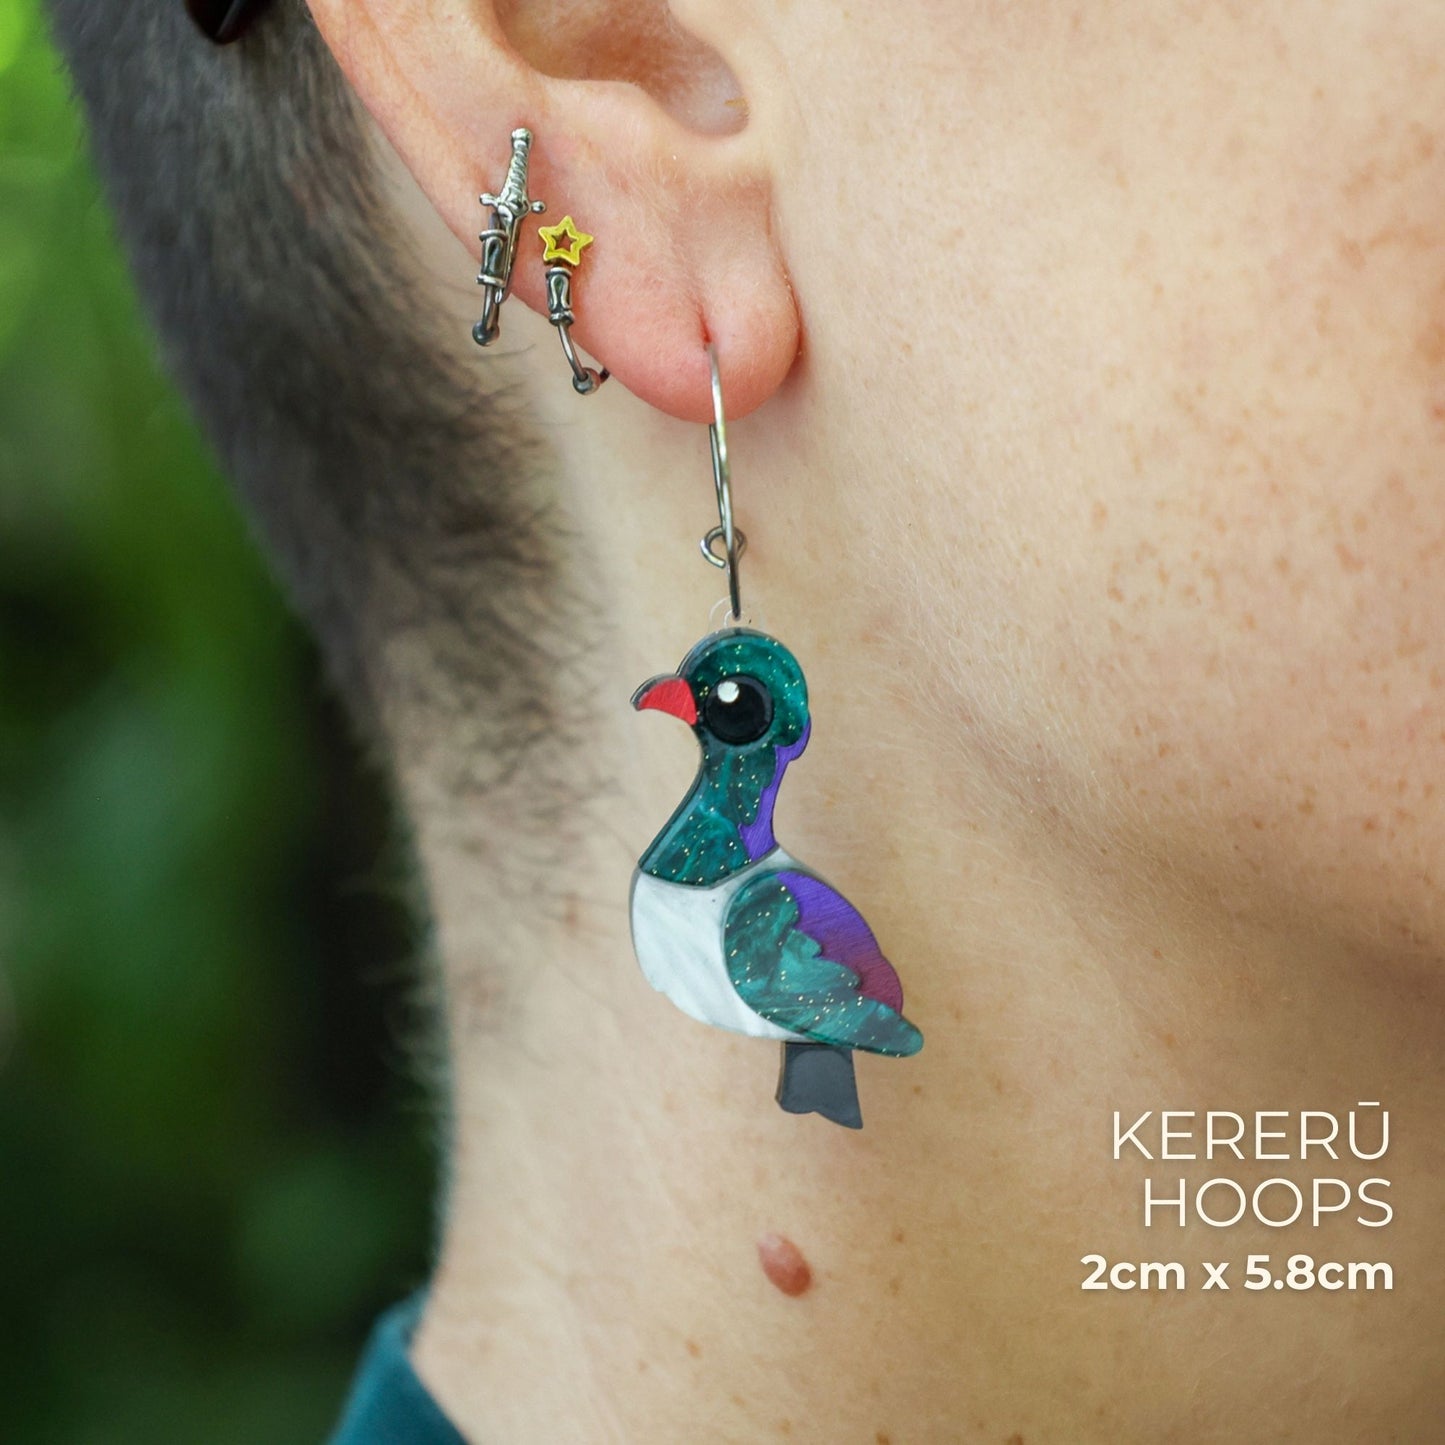 BINKABU Kererū Studs handmade acrylic bird earrings